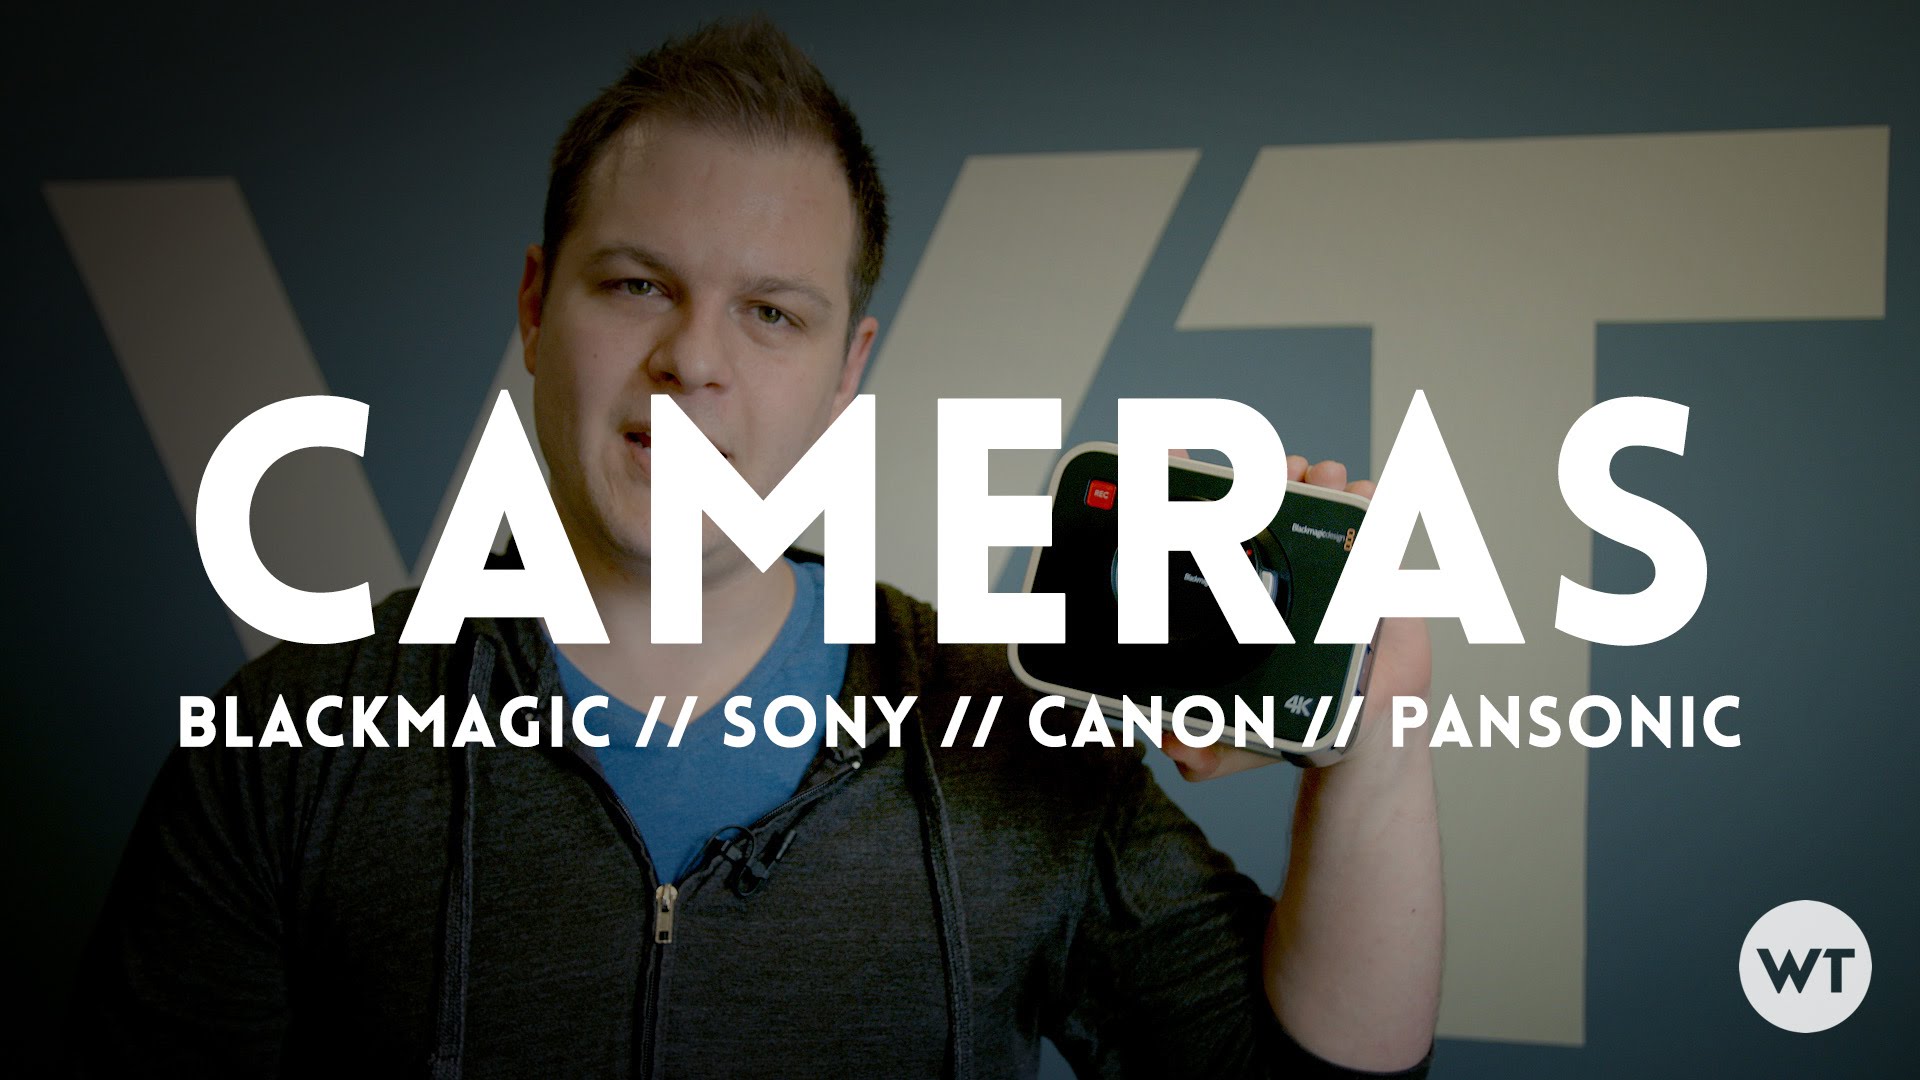 Cameras (Blackmagic, Sony, Canon, and Panasonic)